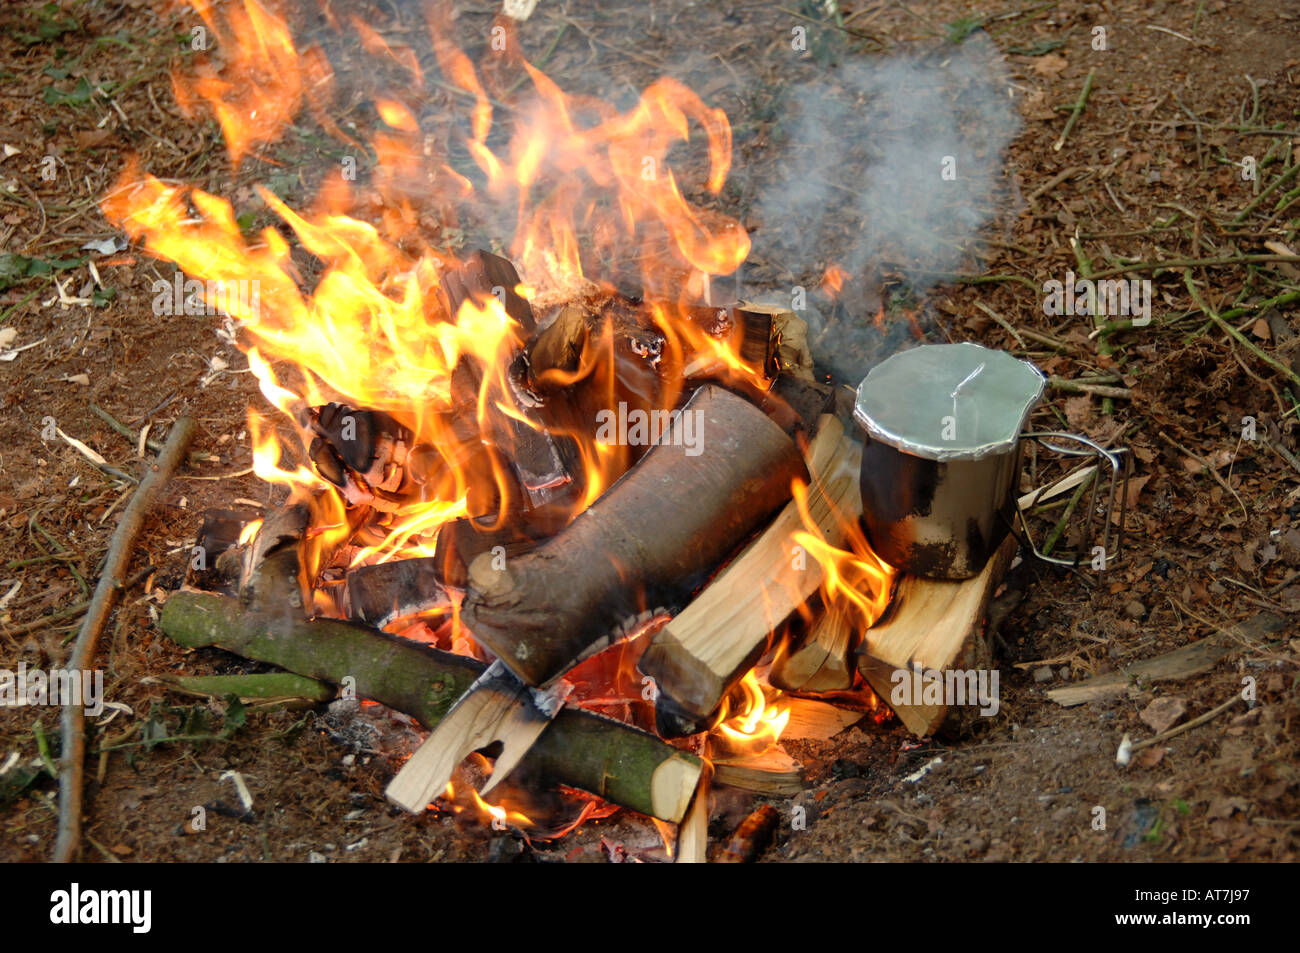 Fuego de campamento cocinar Foto de stock